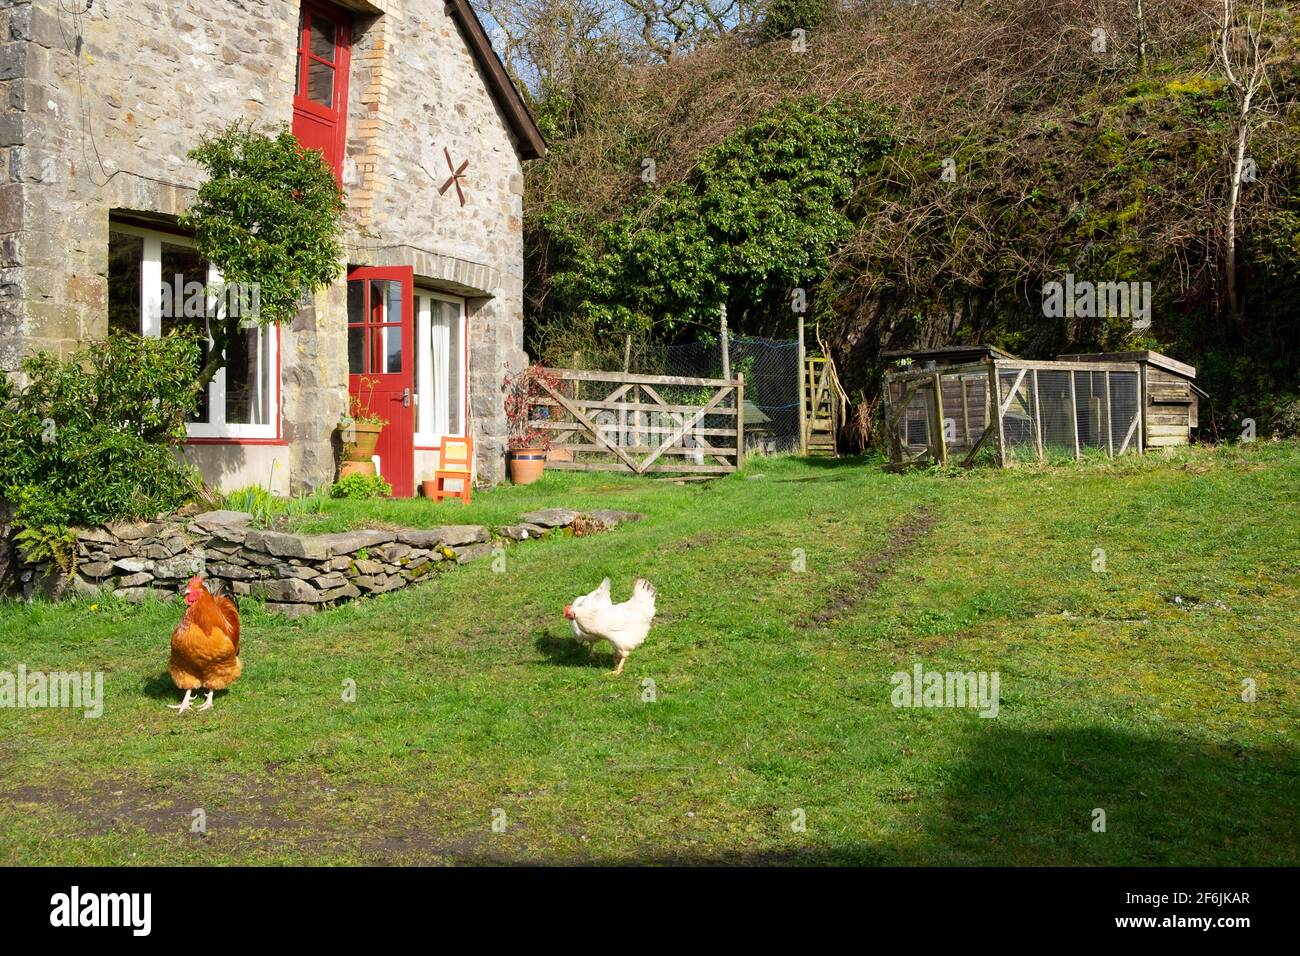 Les poules et les coqs errants errants se trouvent en liberté sur les petites exploitations à l'extérieur En jardin de printemps face de la grange reconvertie Carmarthenshire pays de Galles Royaume-Uni KATHY DEWITT Banque D'Images